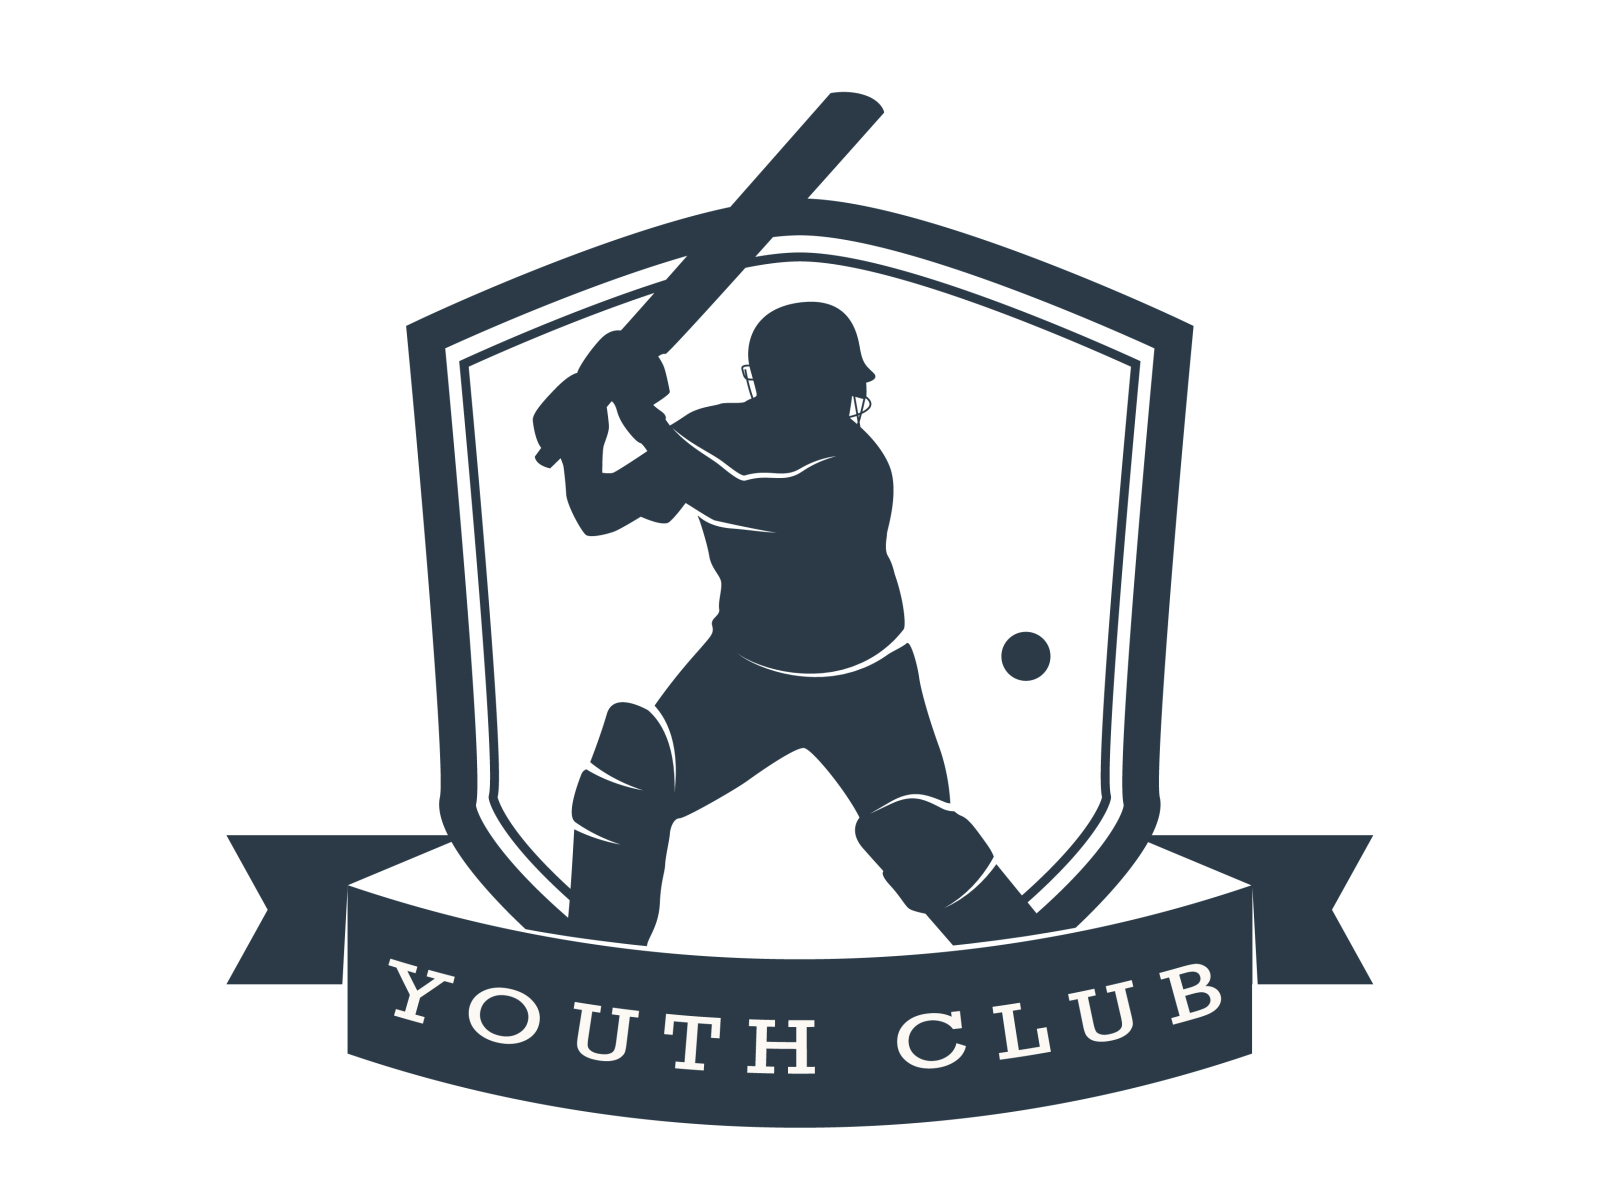 Youth Cricket Club Logo 1 By Tarun Agarwal On Dribbble